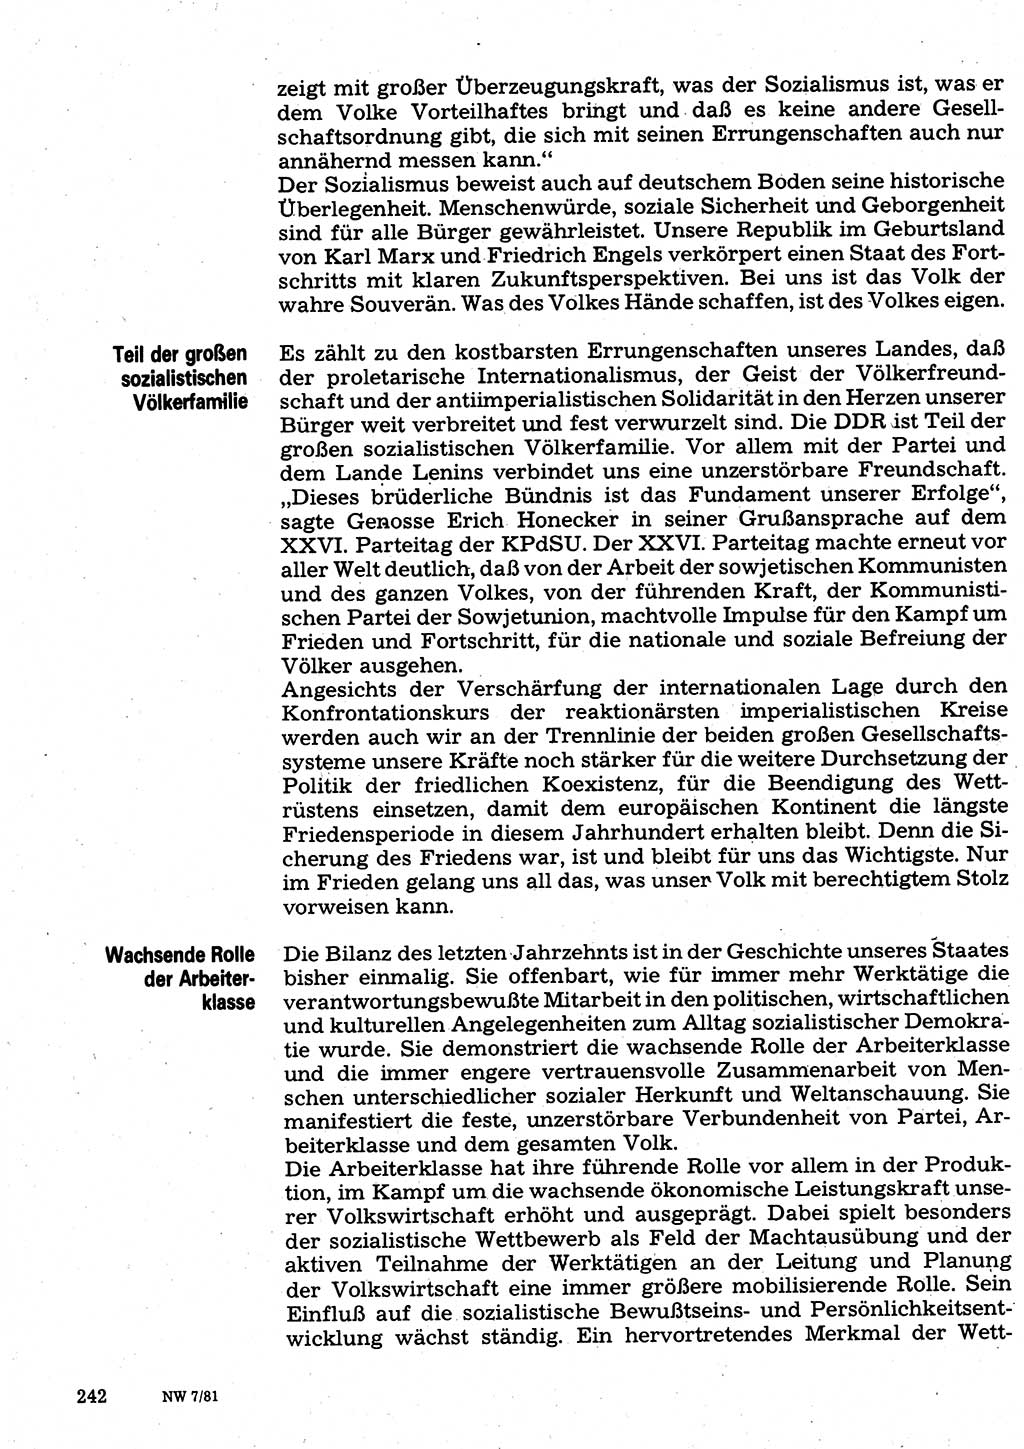 Neuer Weg (NW), Organ des Zentralkomitees (ZK) der SED (Sozialistische Einheitspartei Deutschlands) für Fragen des Parteilebens, 36. Jahrgang [Deutsche Demokratische Republik (DDR)] 1981, Seite 242 (NW ZK SED DDR 1981, S. 242)